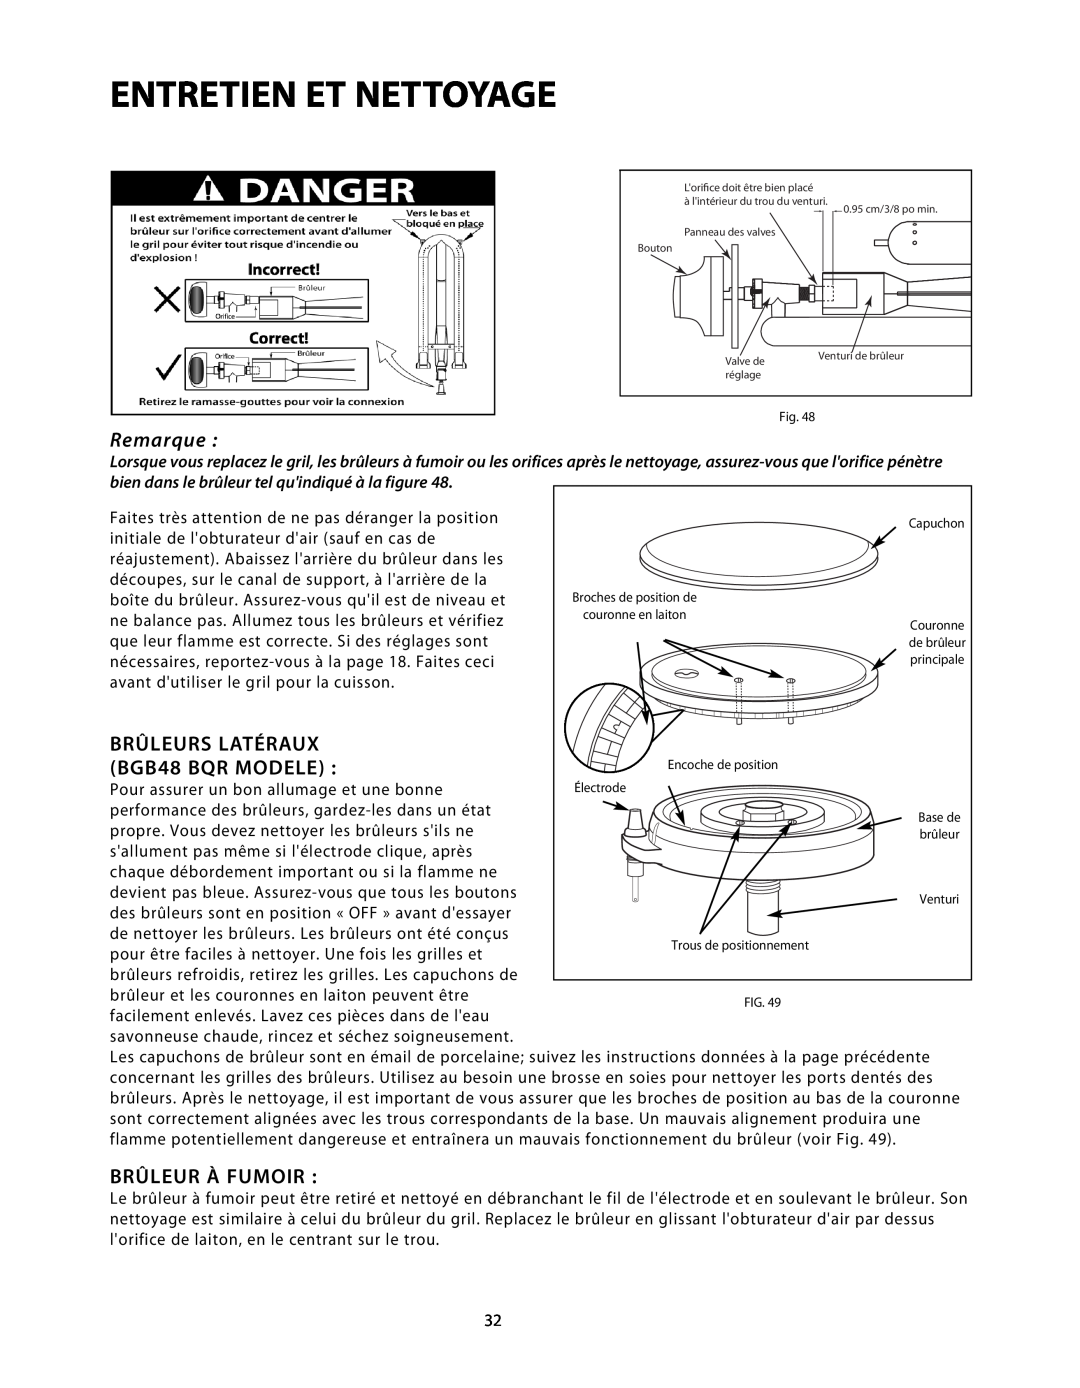 DCS BGB48-BQAR, BGB48-BQR manual Brûleurs Latéraux, BGB48 BQR MODELE, Brûleur À Fumoir, Entretien Et Nettoyage, Remarque 